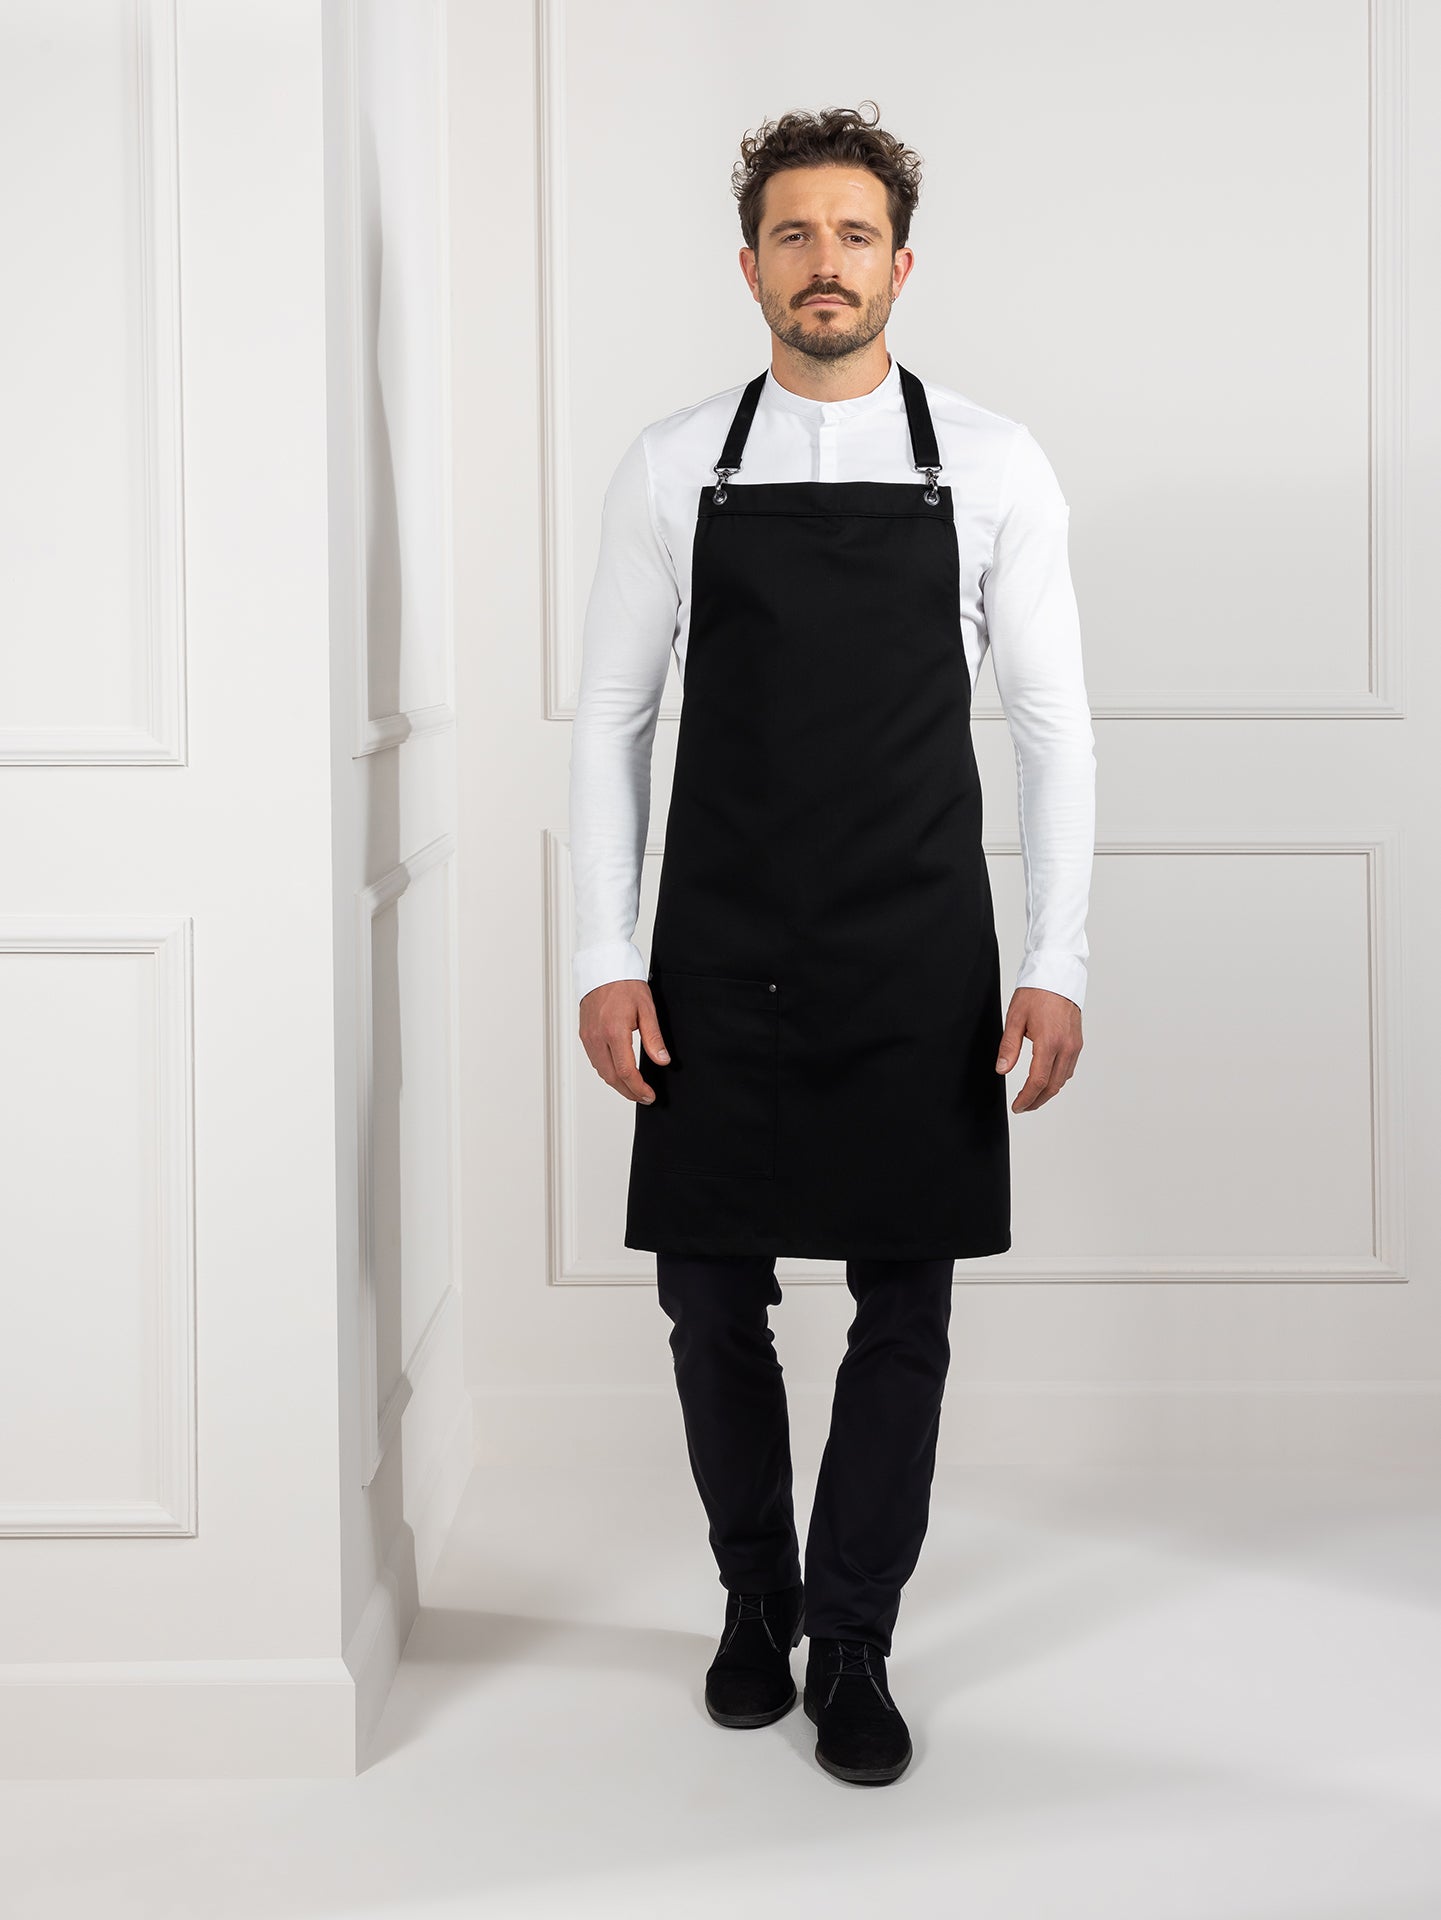 Bib Apron Davos Black by Le Nouveau Chef -  ChefsCotton